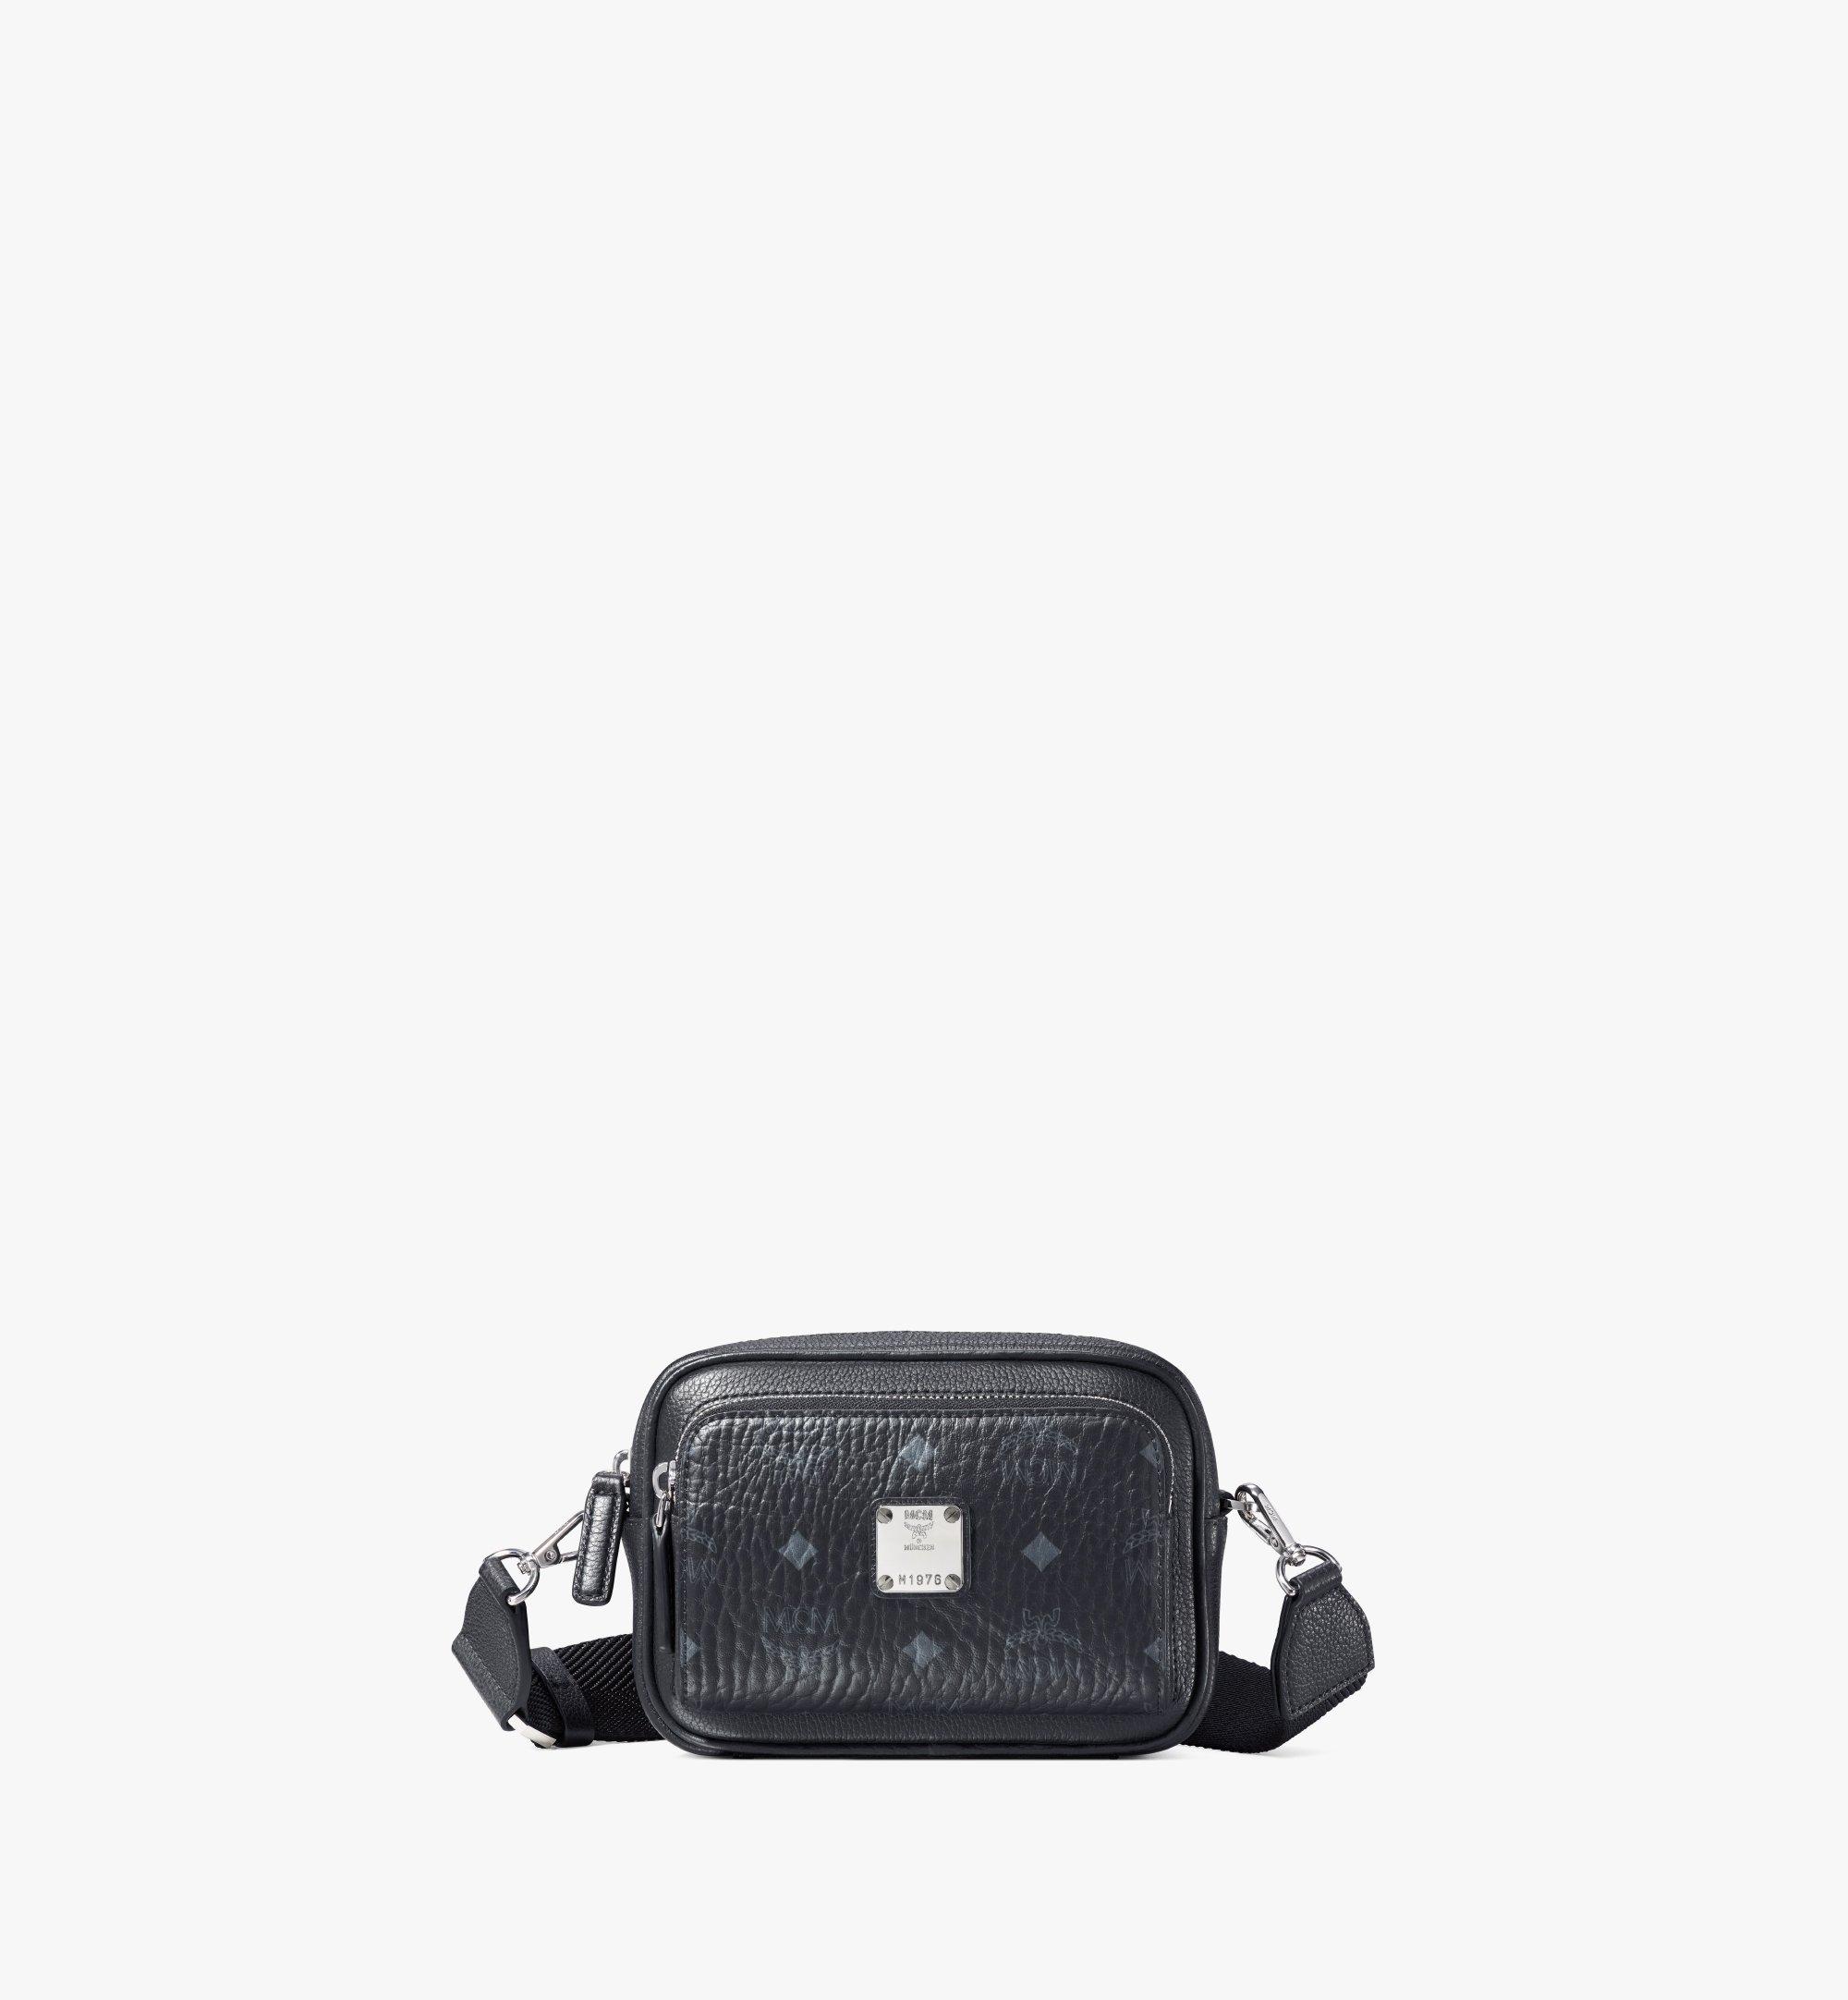 Mcm Klassik Small Messenger Bag in Black